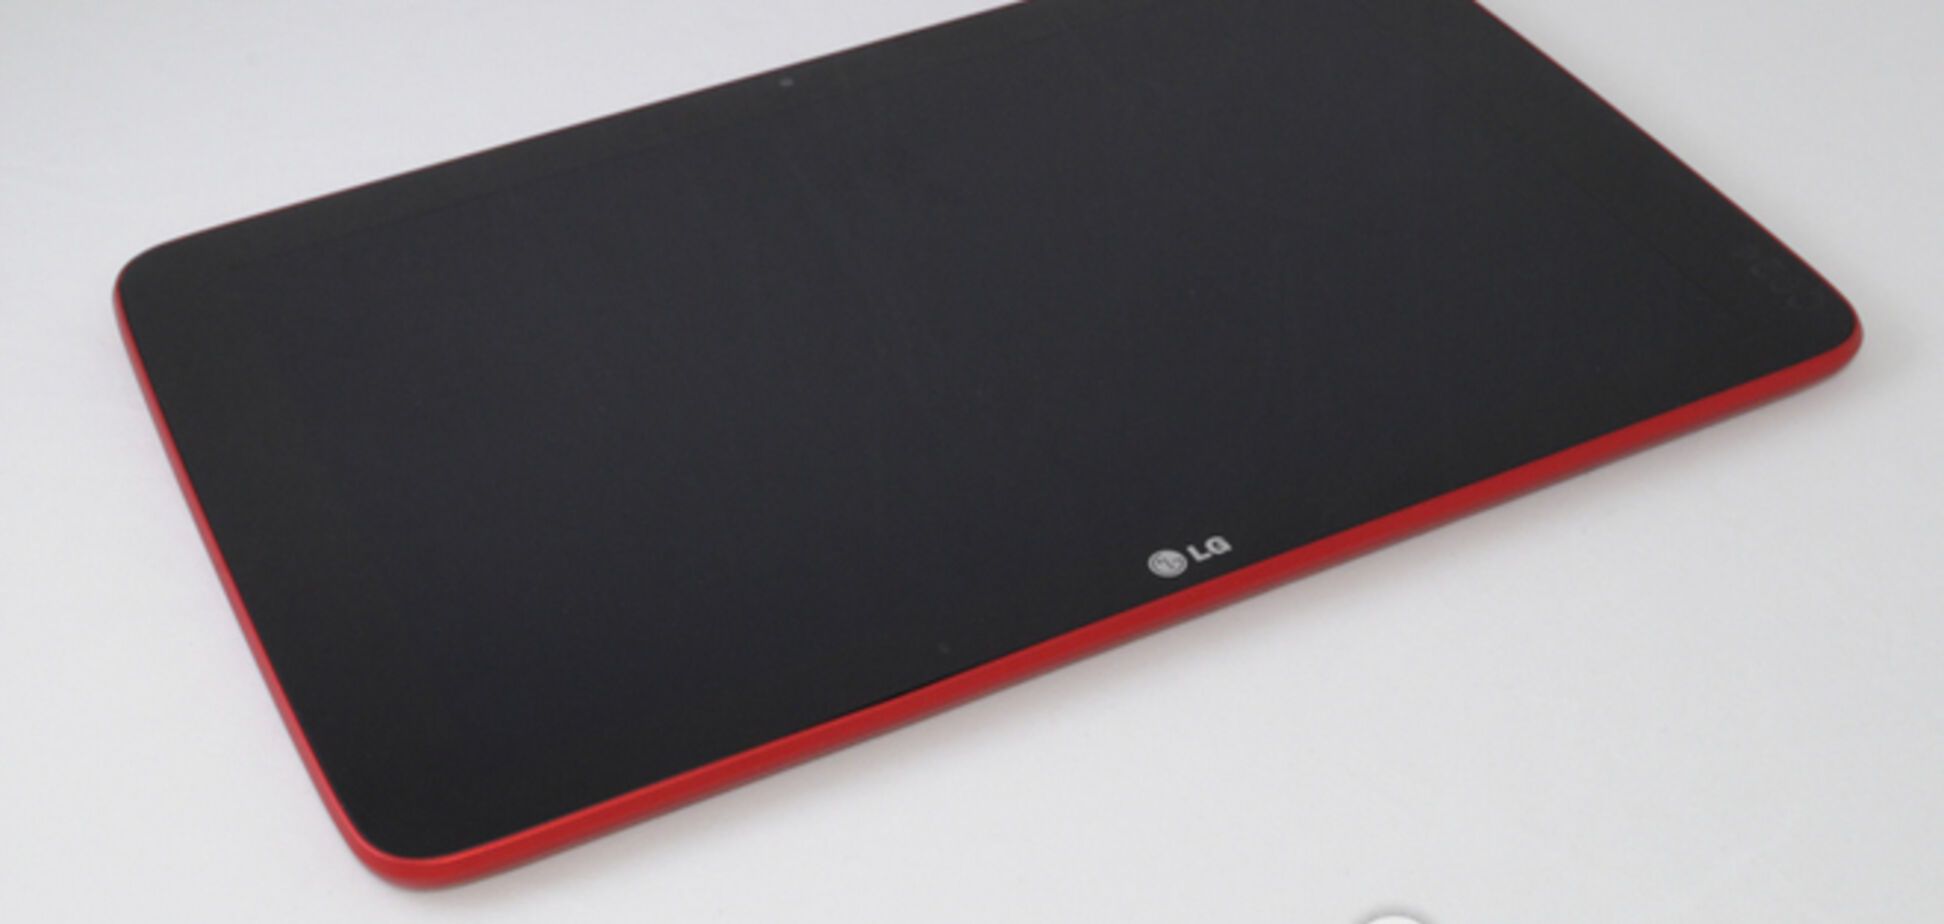 Обзор LG G Pad 10.1: планшет, который приятно удивил